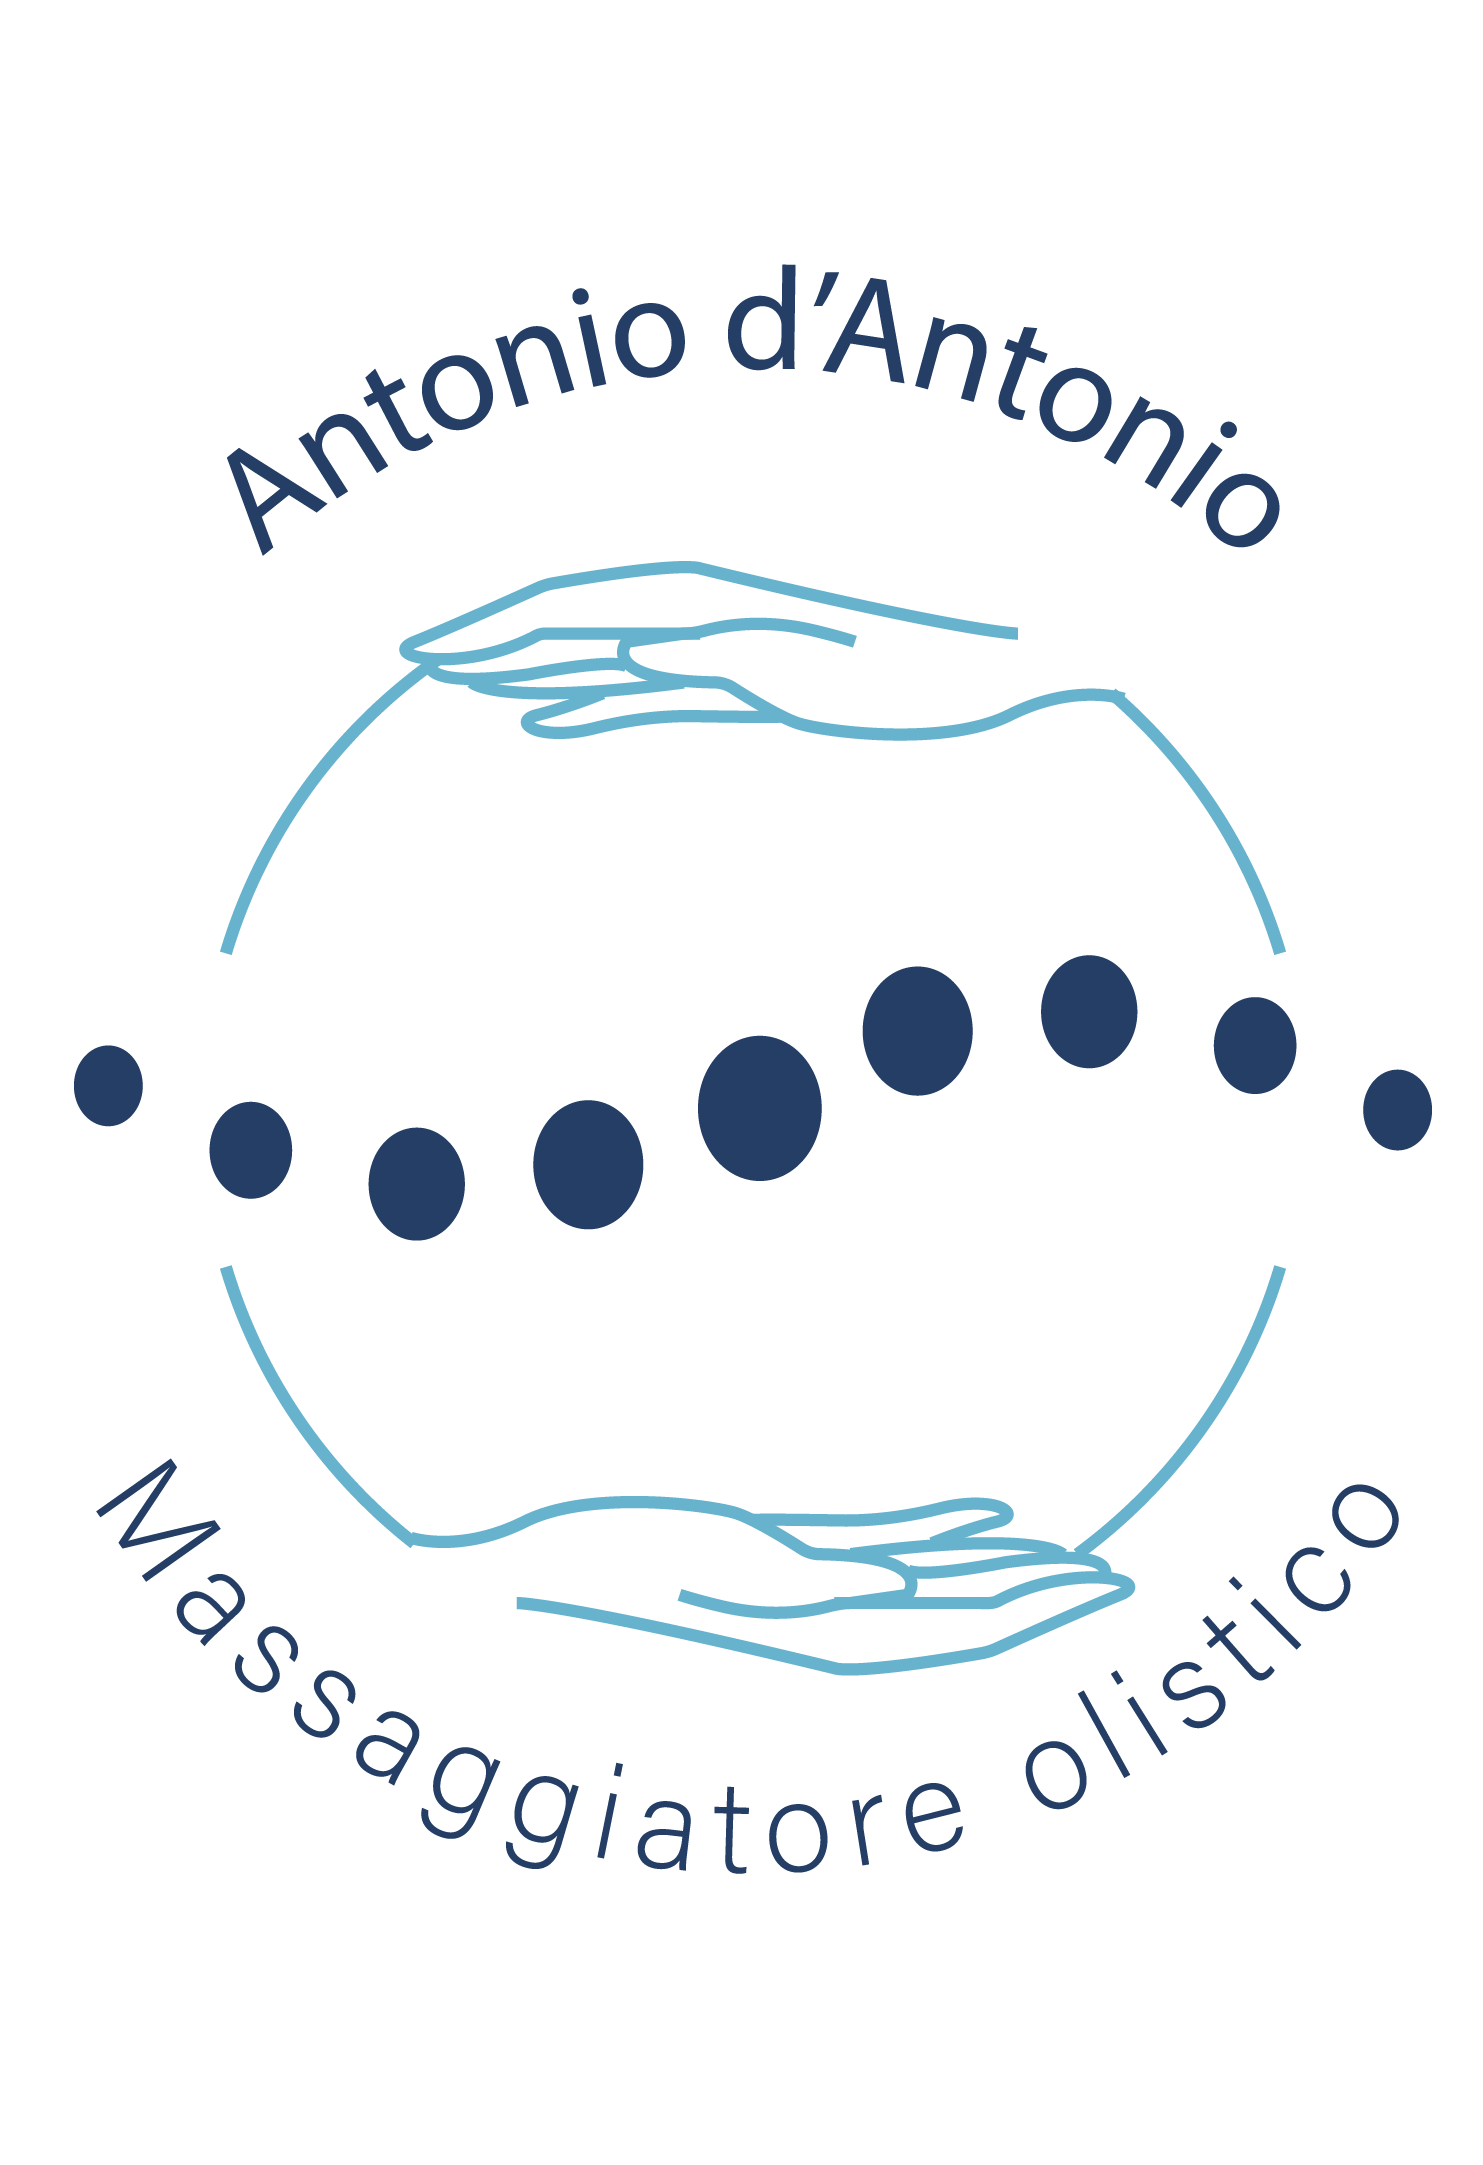 Logo_Antoniod'Antonio_OK